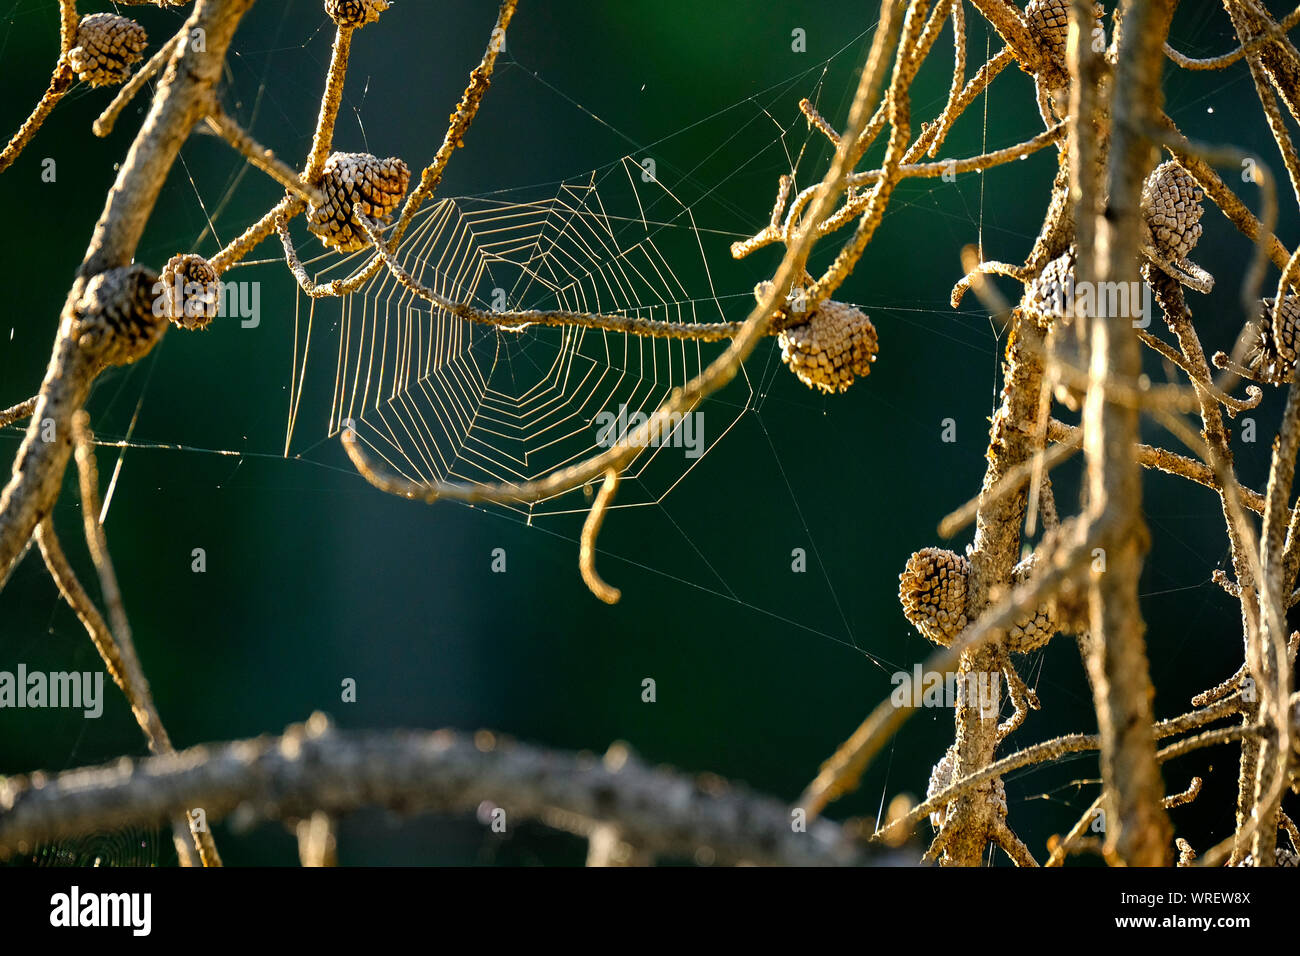 Spinnennetz hängen in Pine Tree Branches im Sommer am frühen Morgen Licht Muster der seidene Faden Stockfoto